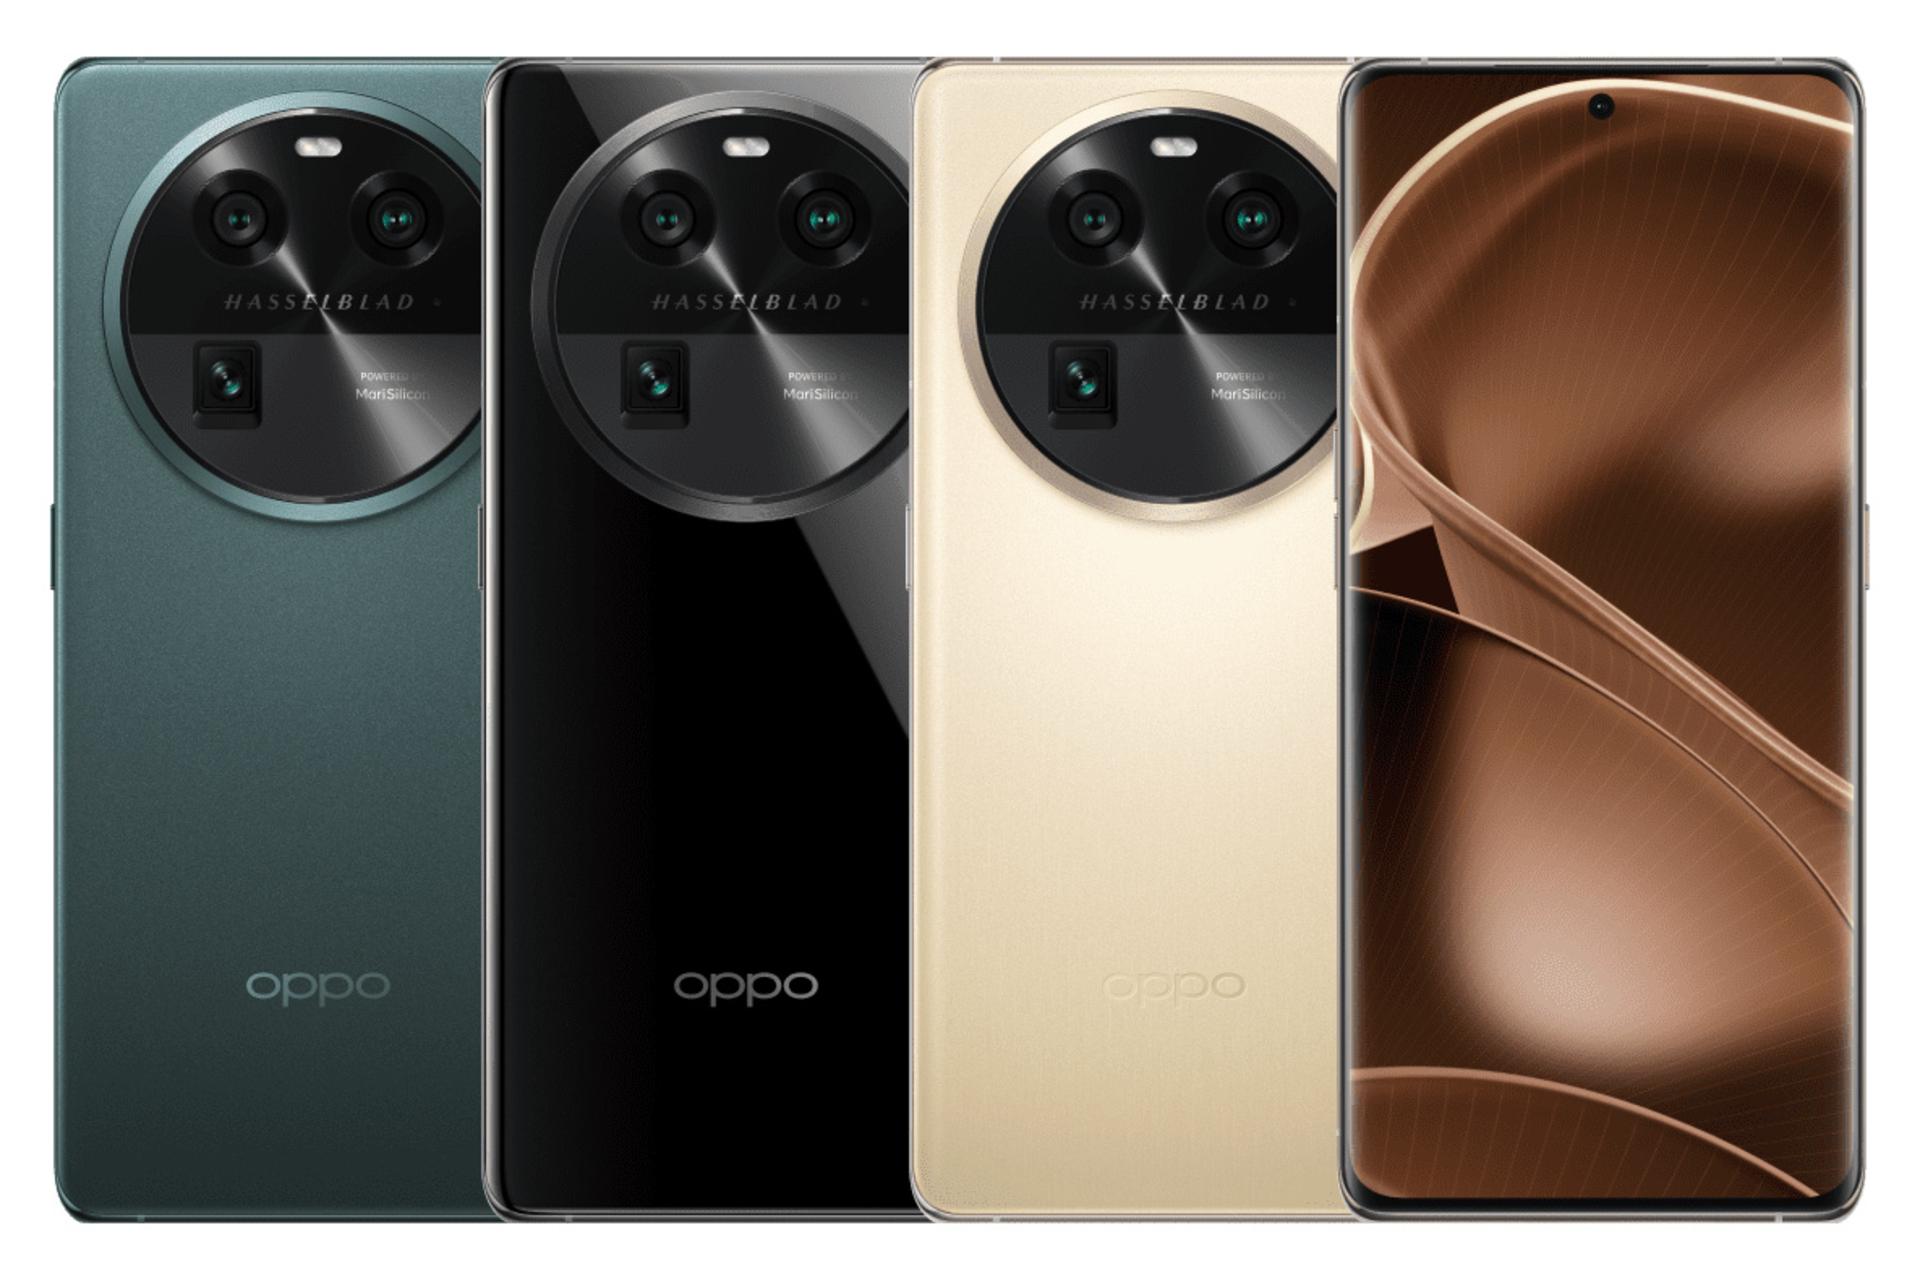 رنگ های مختلف گوشی موبایل فایند X6 اوپو / Oppo Find X6